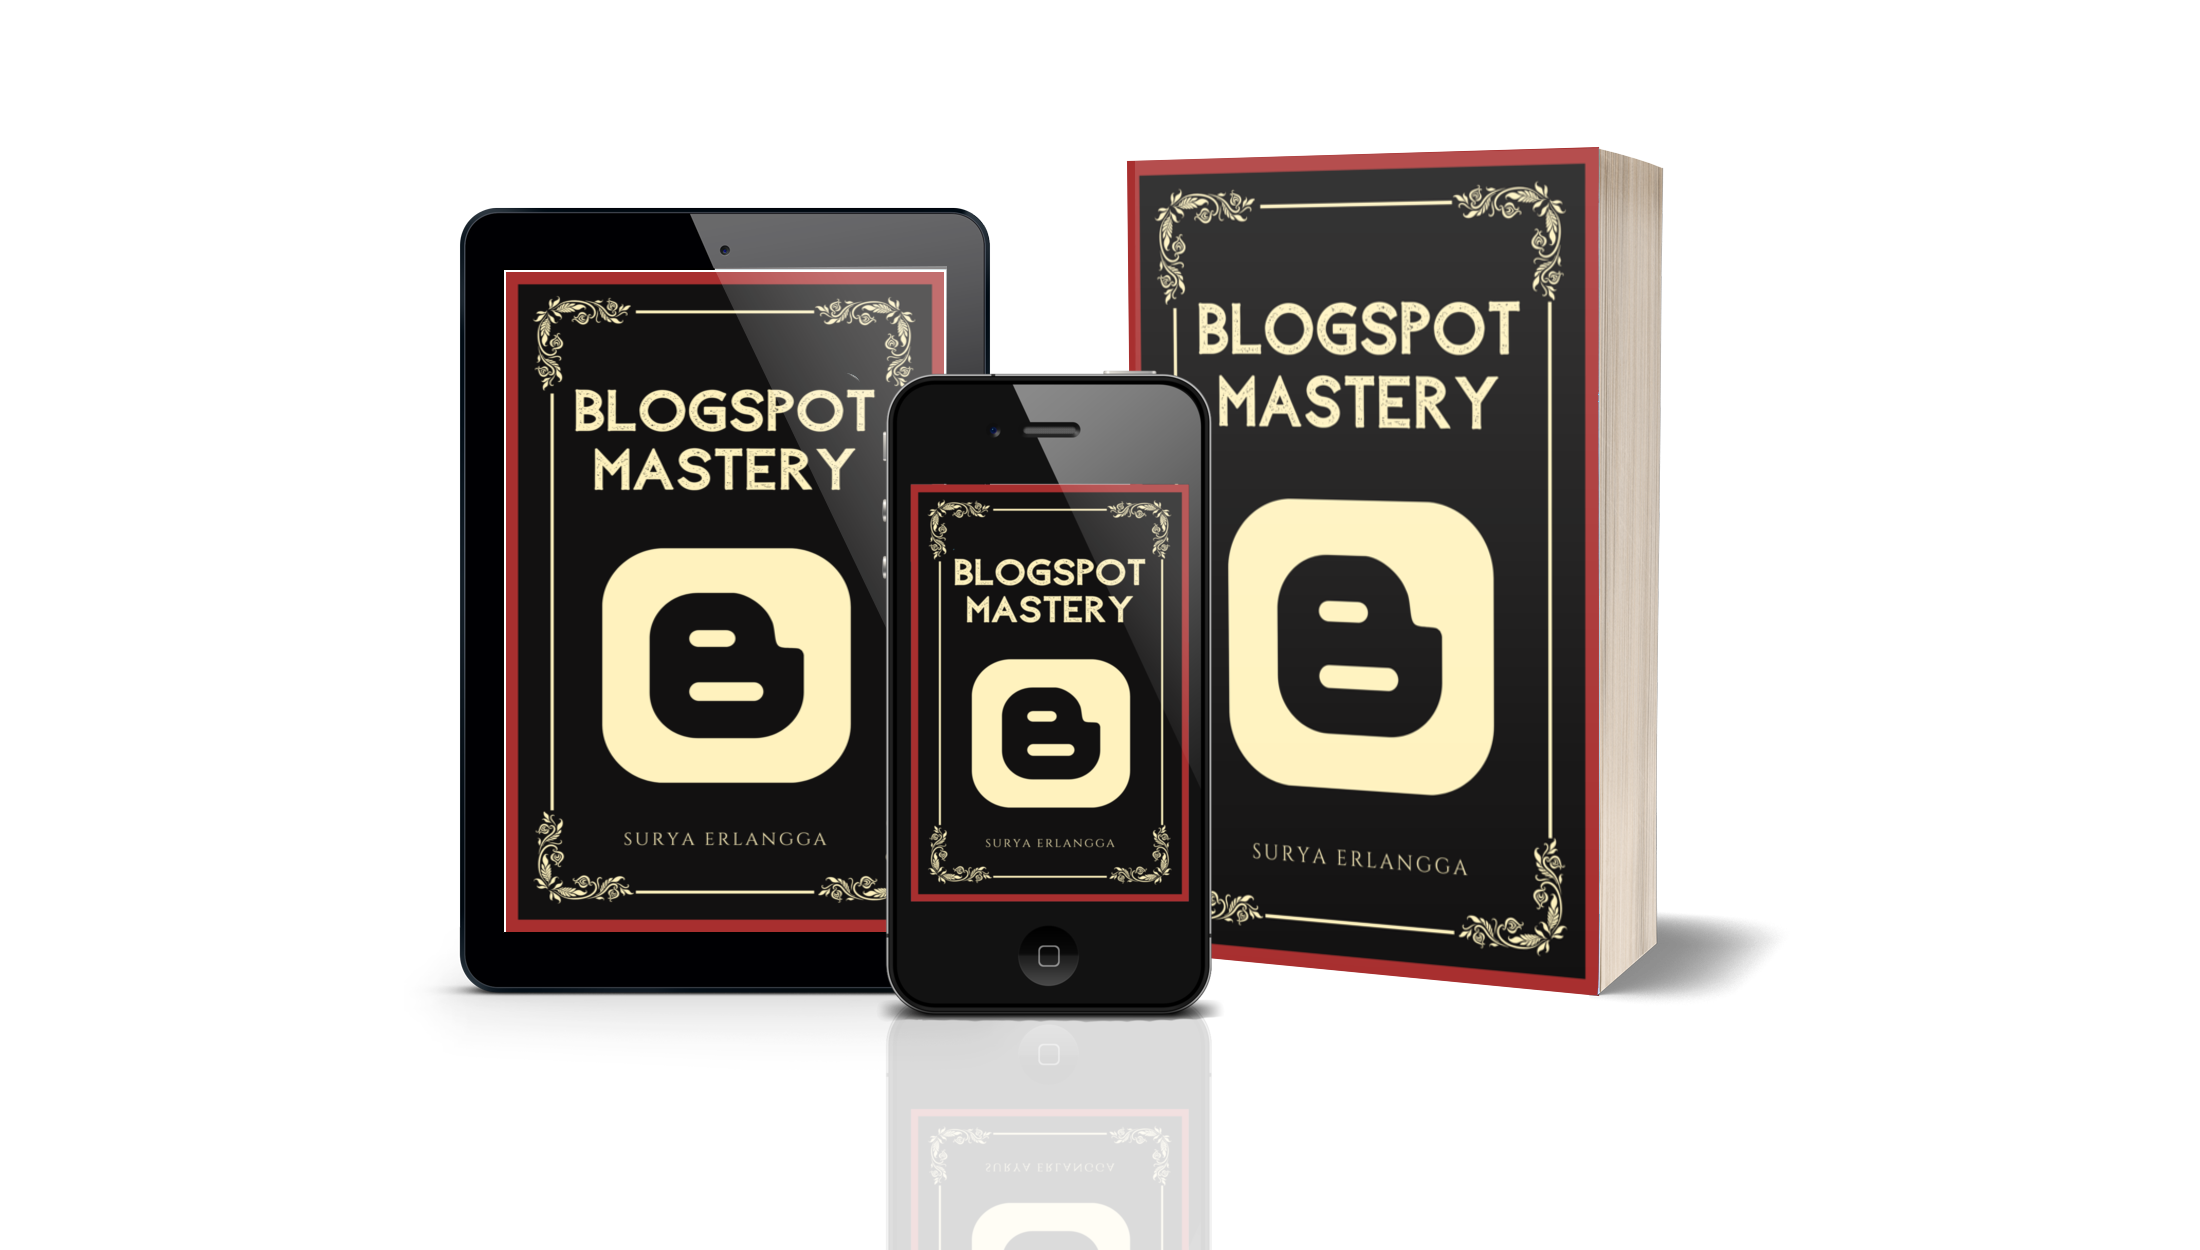 Blogspot Mastery